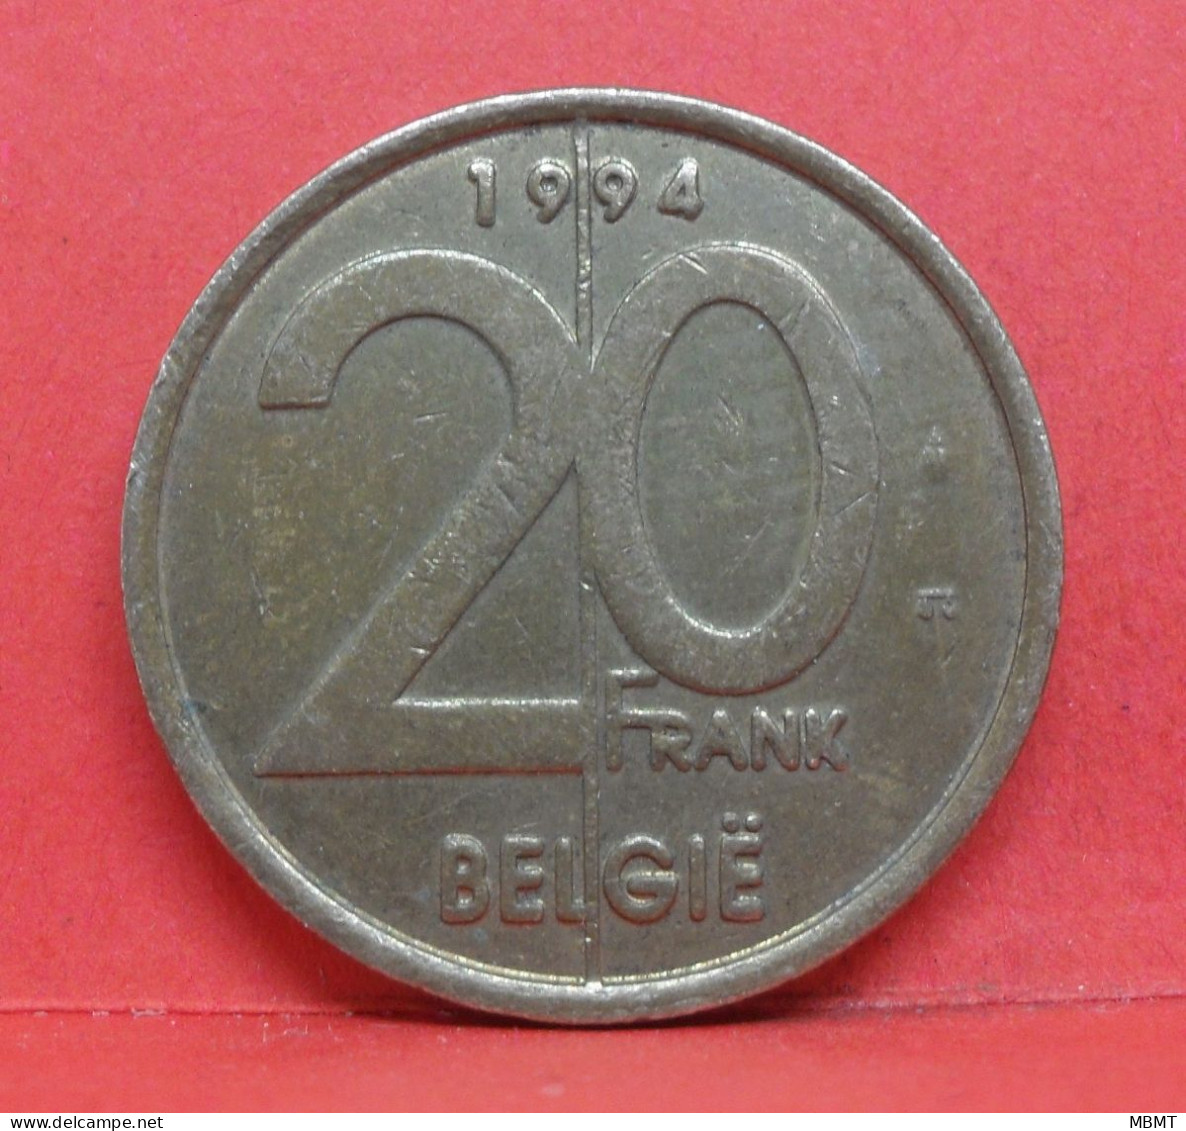 20 Frank 1994 - TB - Pièce Monnaie Belgie - Article N°2020 - 20 Frank